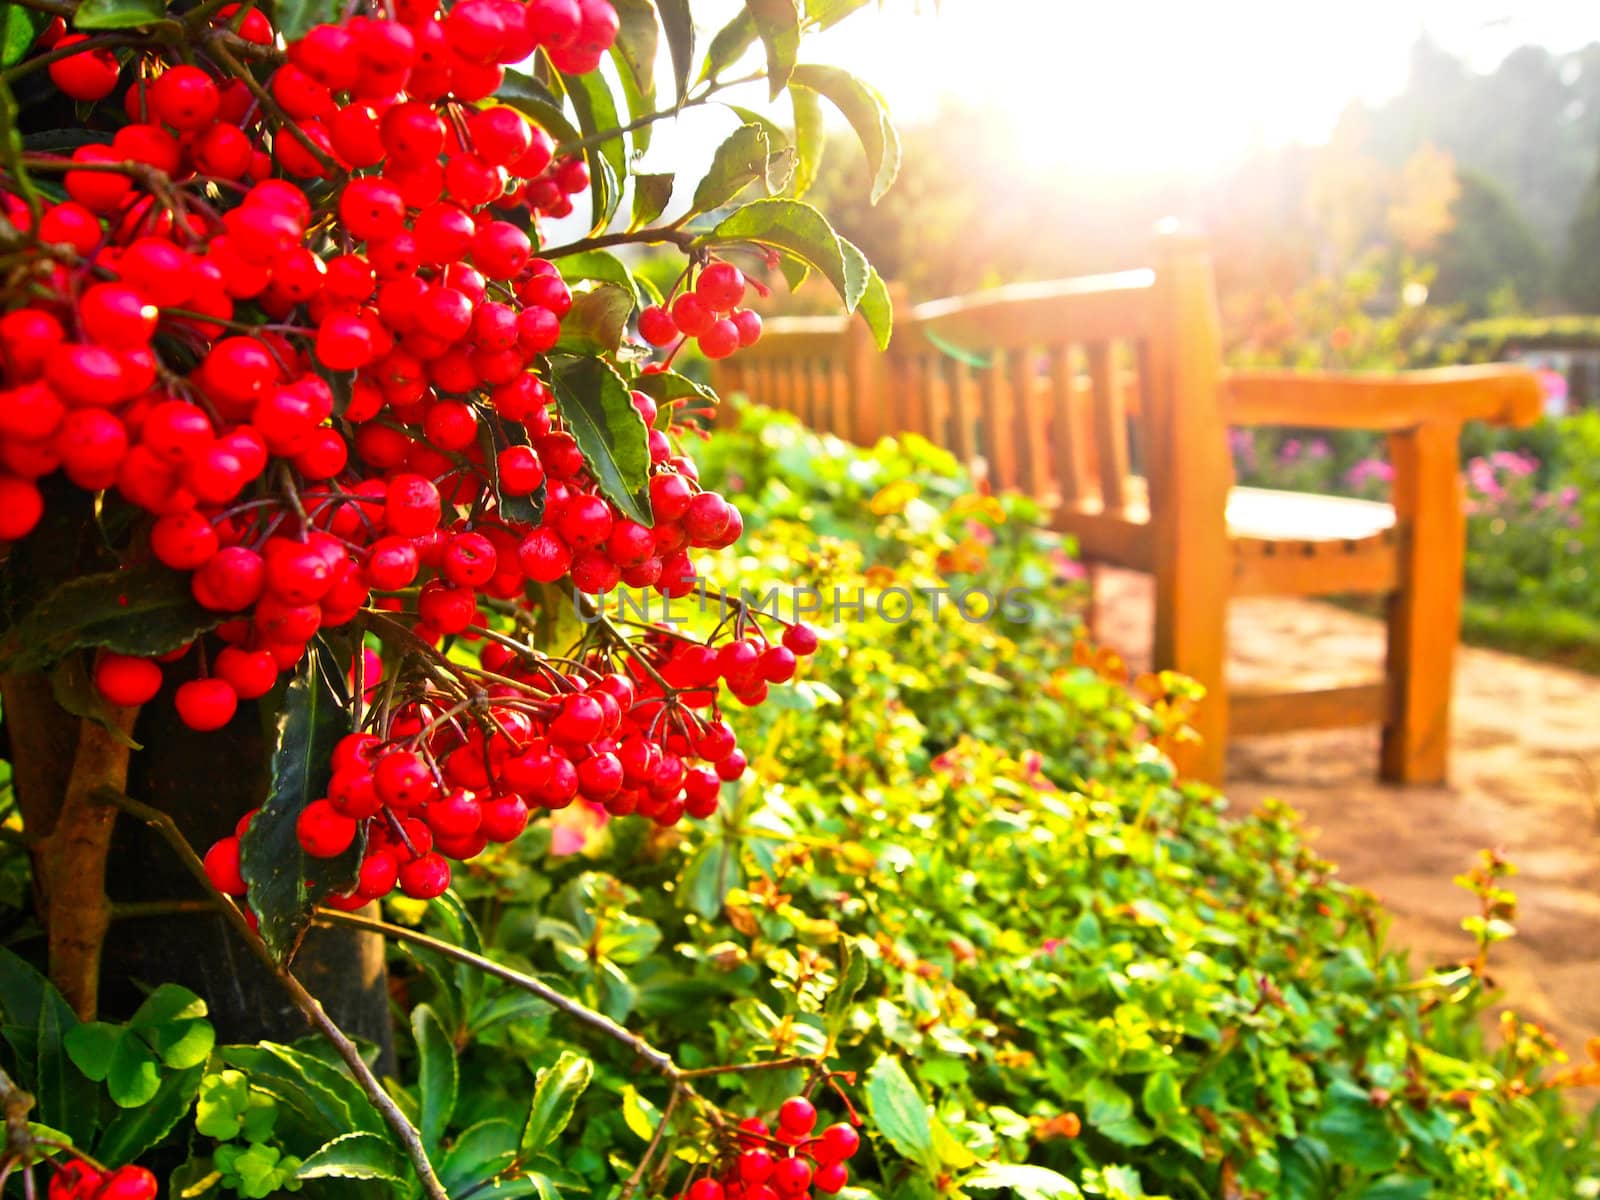 Red fruit in garden by gjeerawut